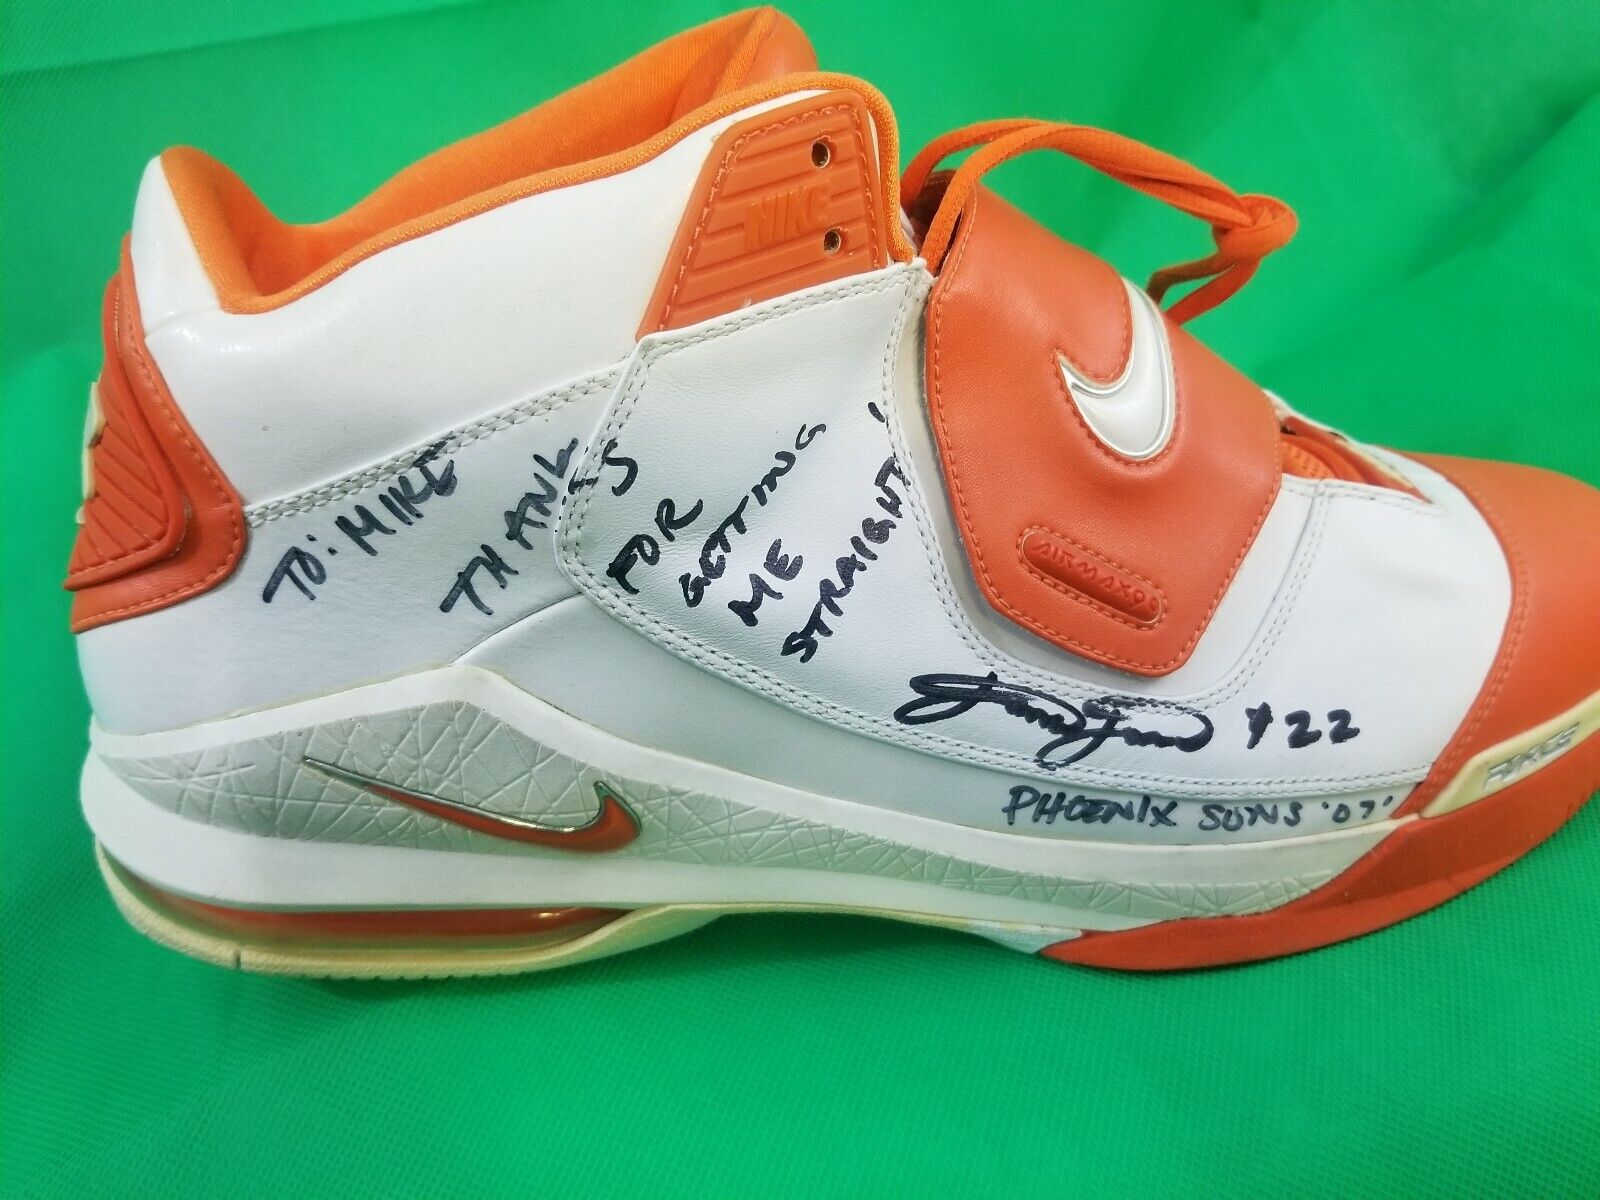 Phoenix Suns 2007 Autographed James Jones Shoe